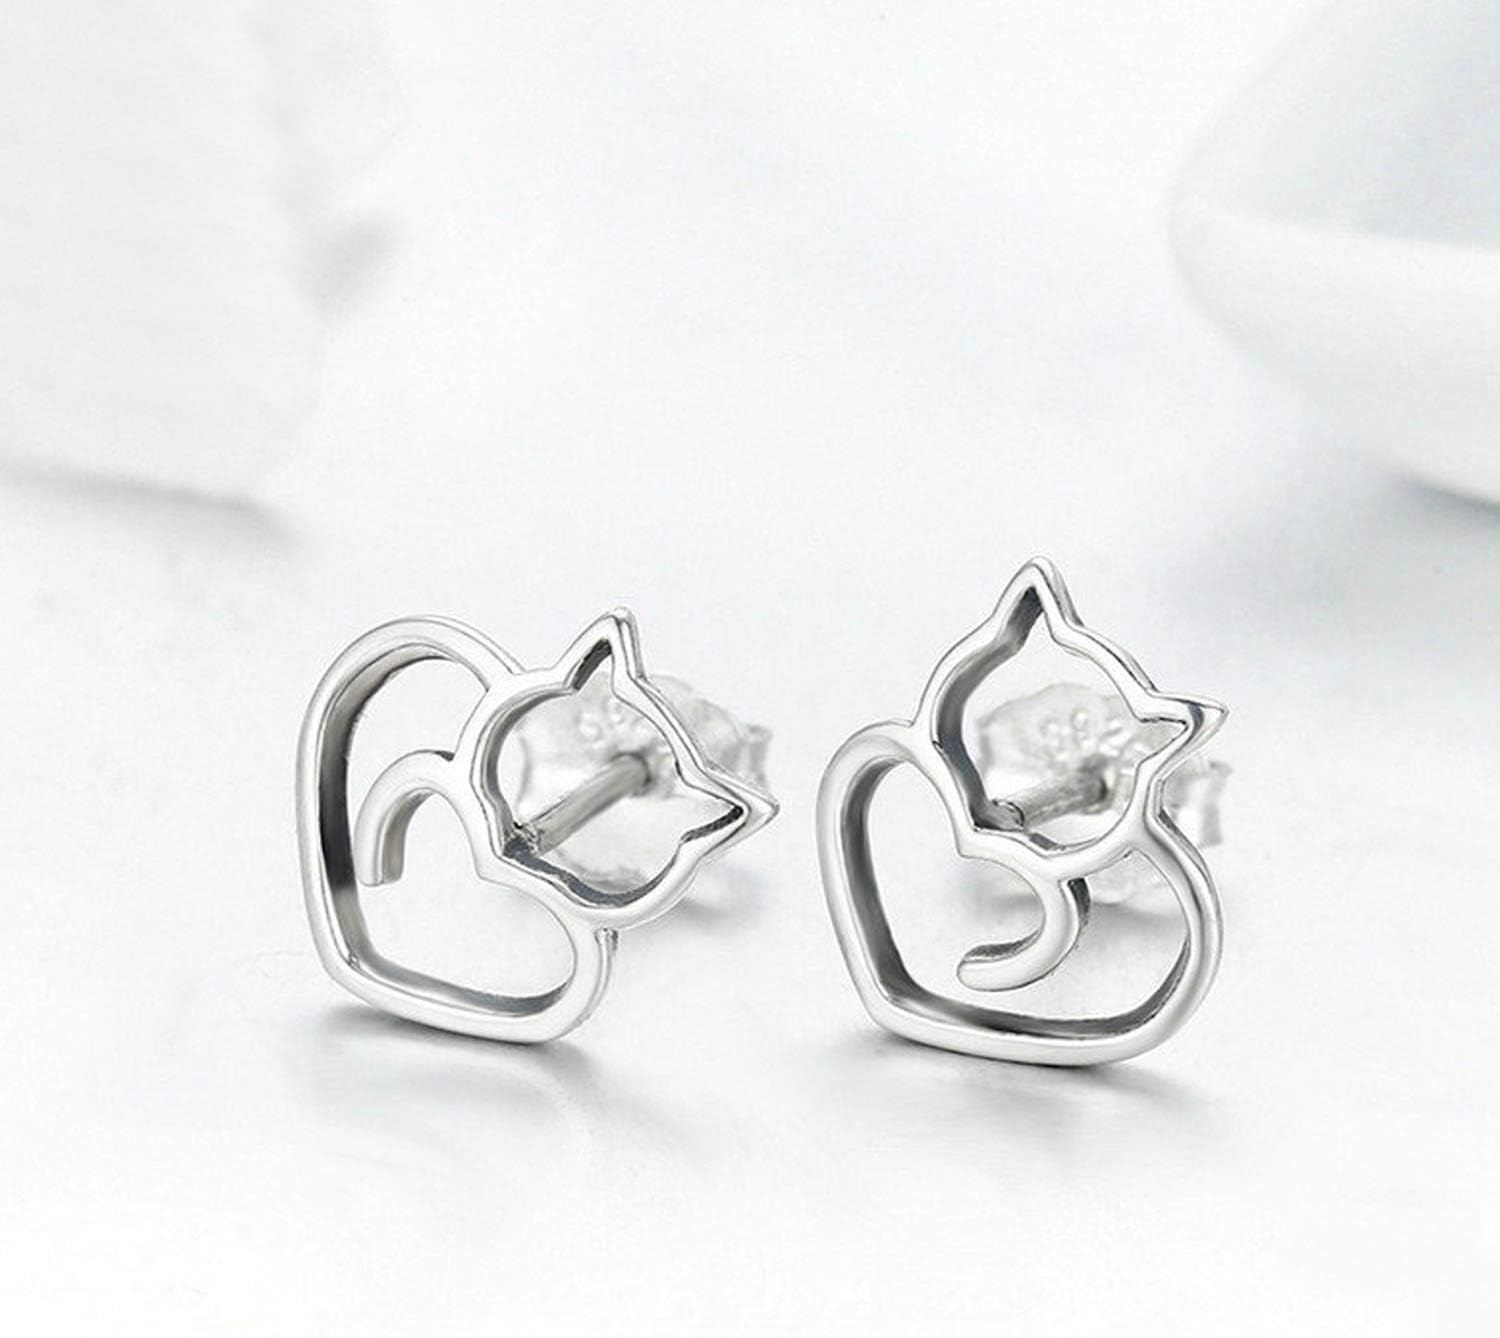 Cute Cat Earrings Stud Pearl Earrings for Women Mouse Cubic Zircon Hypoallergenic Earrings Christmas Birthday Gift